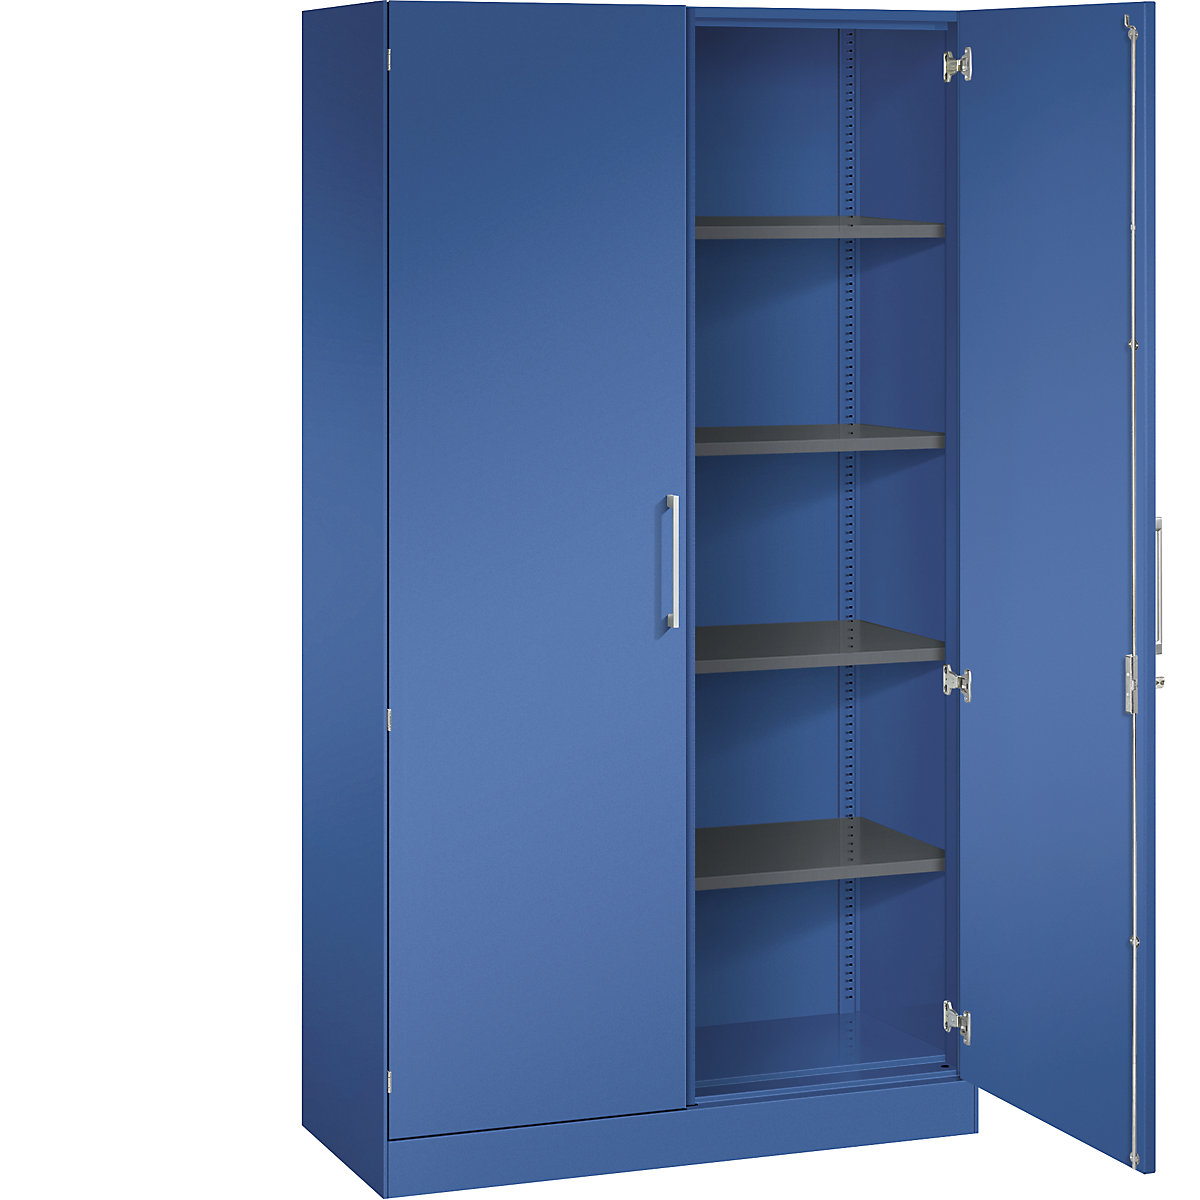 ASISTO double door cupboard, height 1980 mm – C+P, width 1000 mm, 4 shelves, gentian blue/gentian blue-7